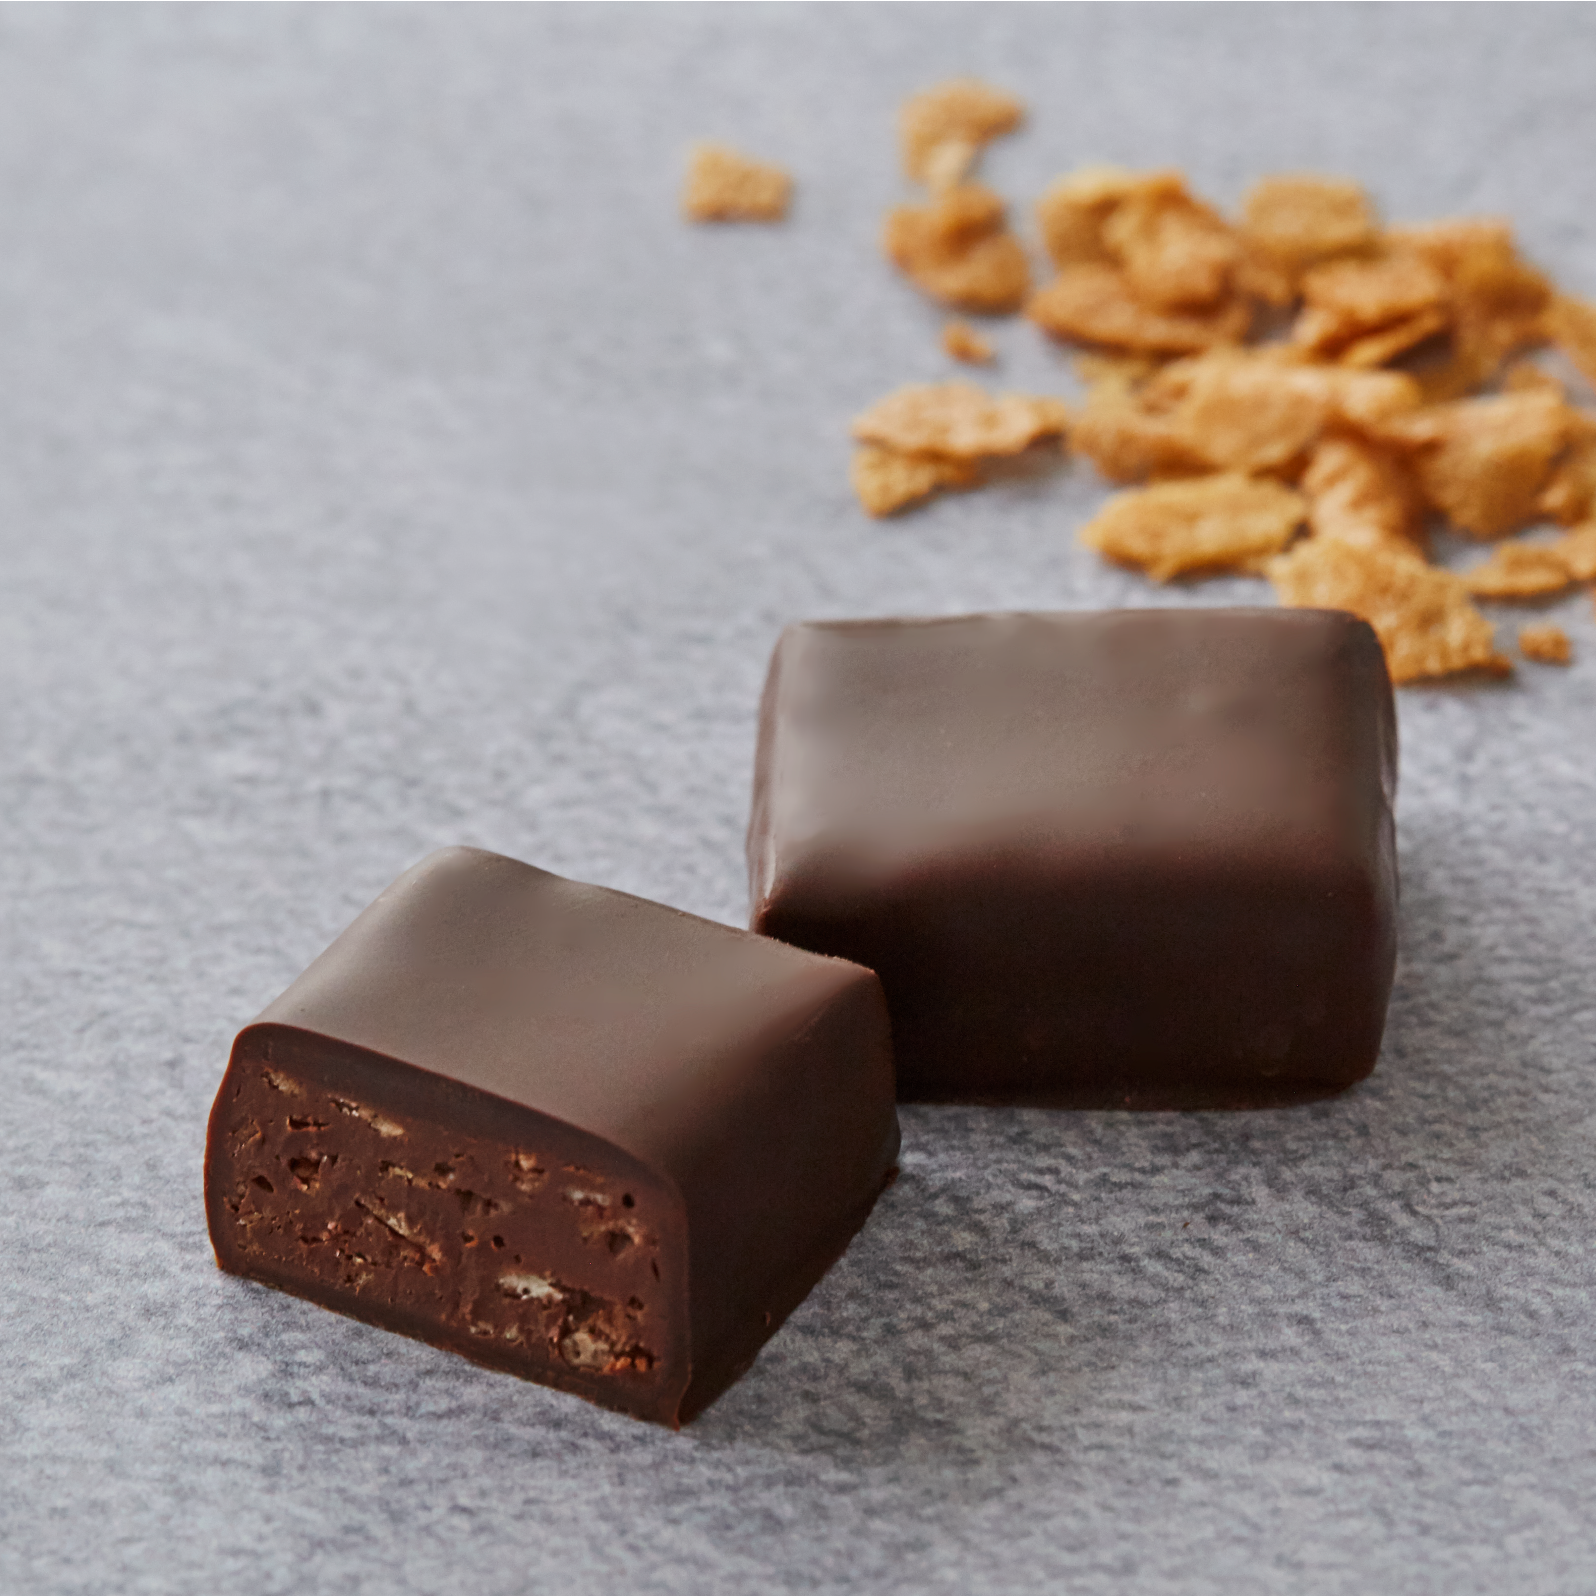 【4袋入り】プラリネチョコレート2種食べ比べセット